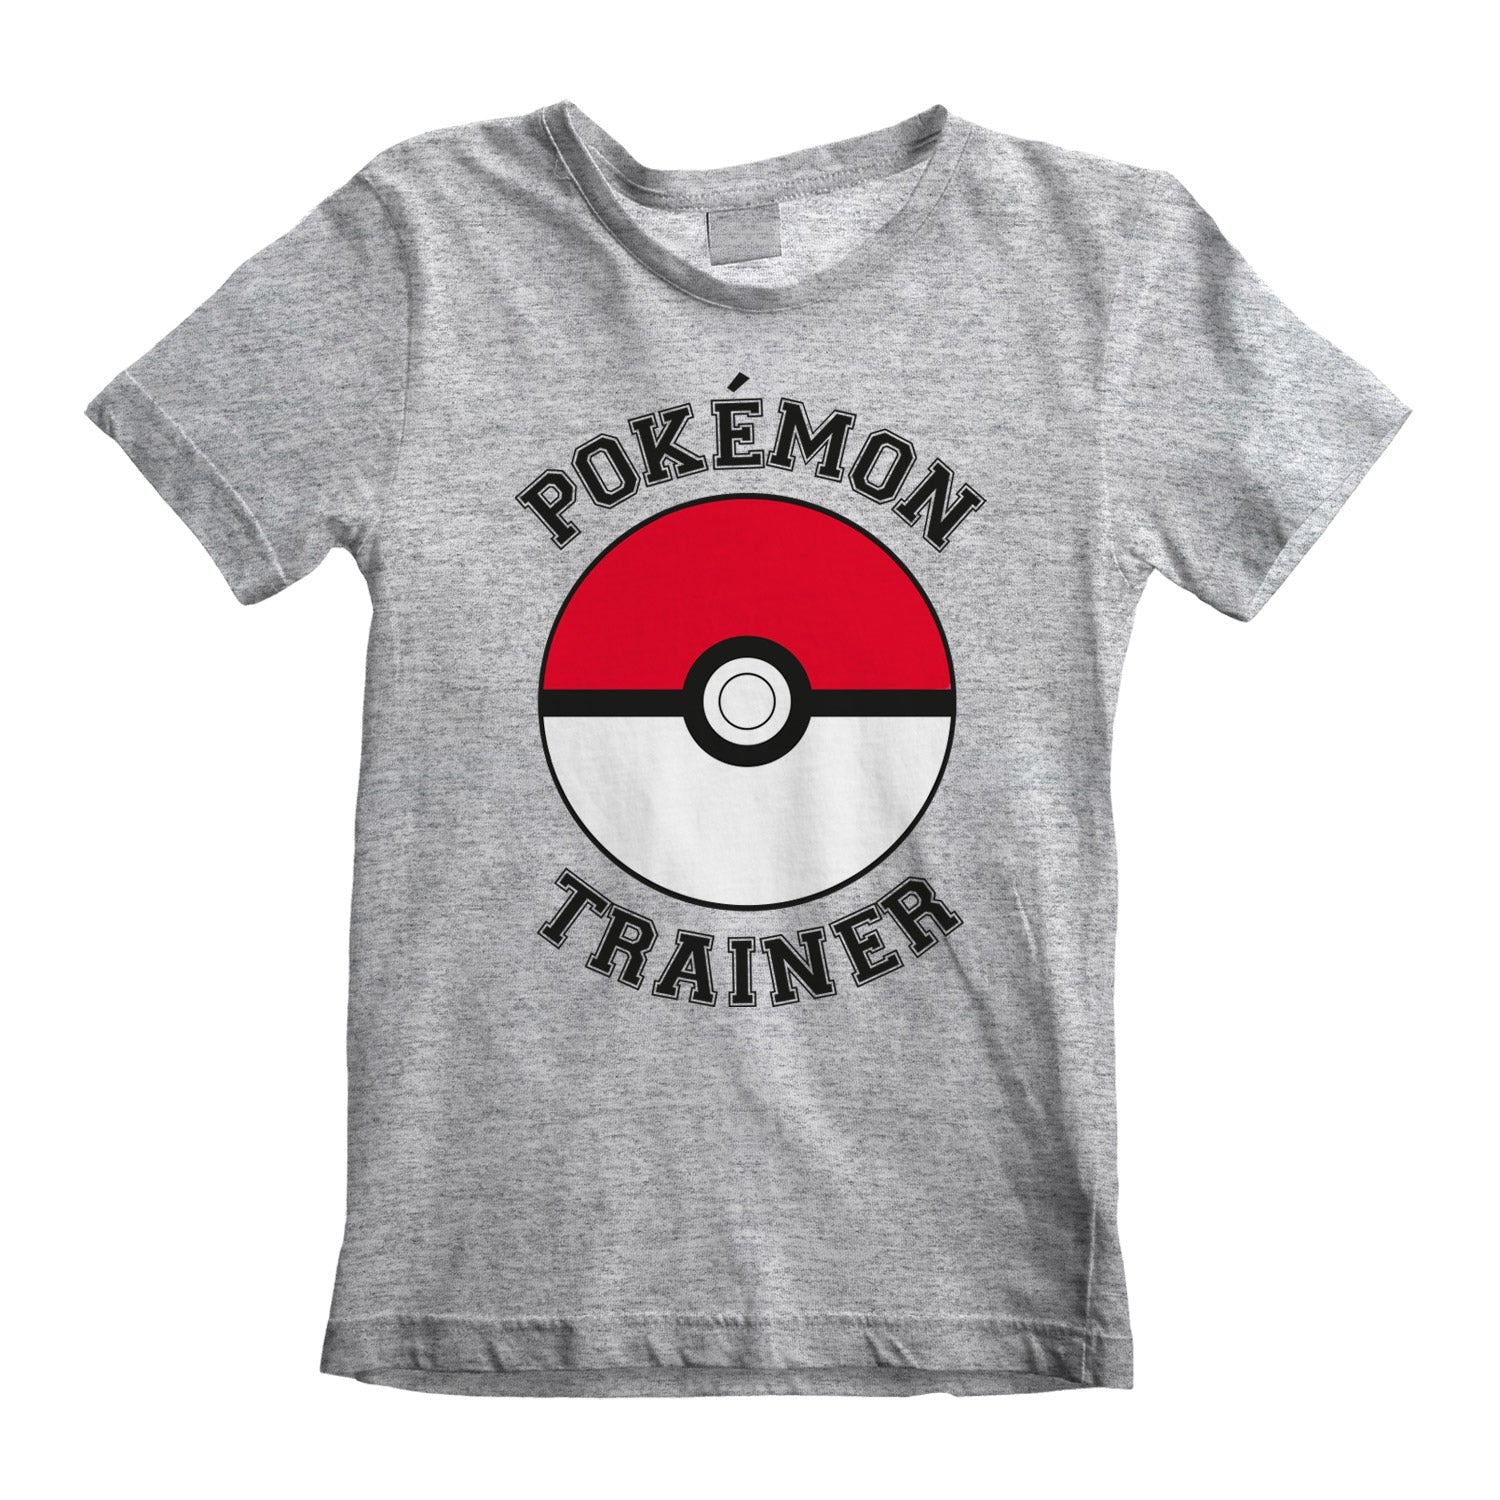 T-shirt Pokemon: Trainer - Taglia L - Se acquistata con Pokemon Leggende Arceus scontata a 10 € al check-out